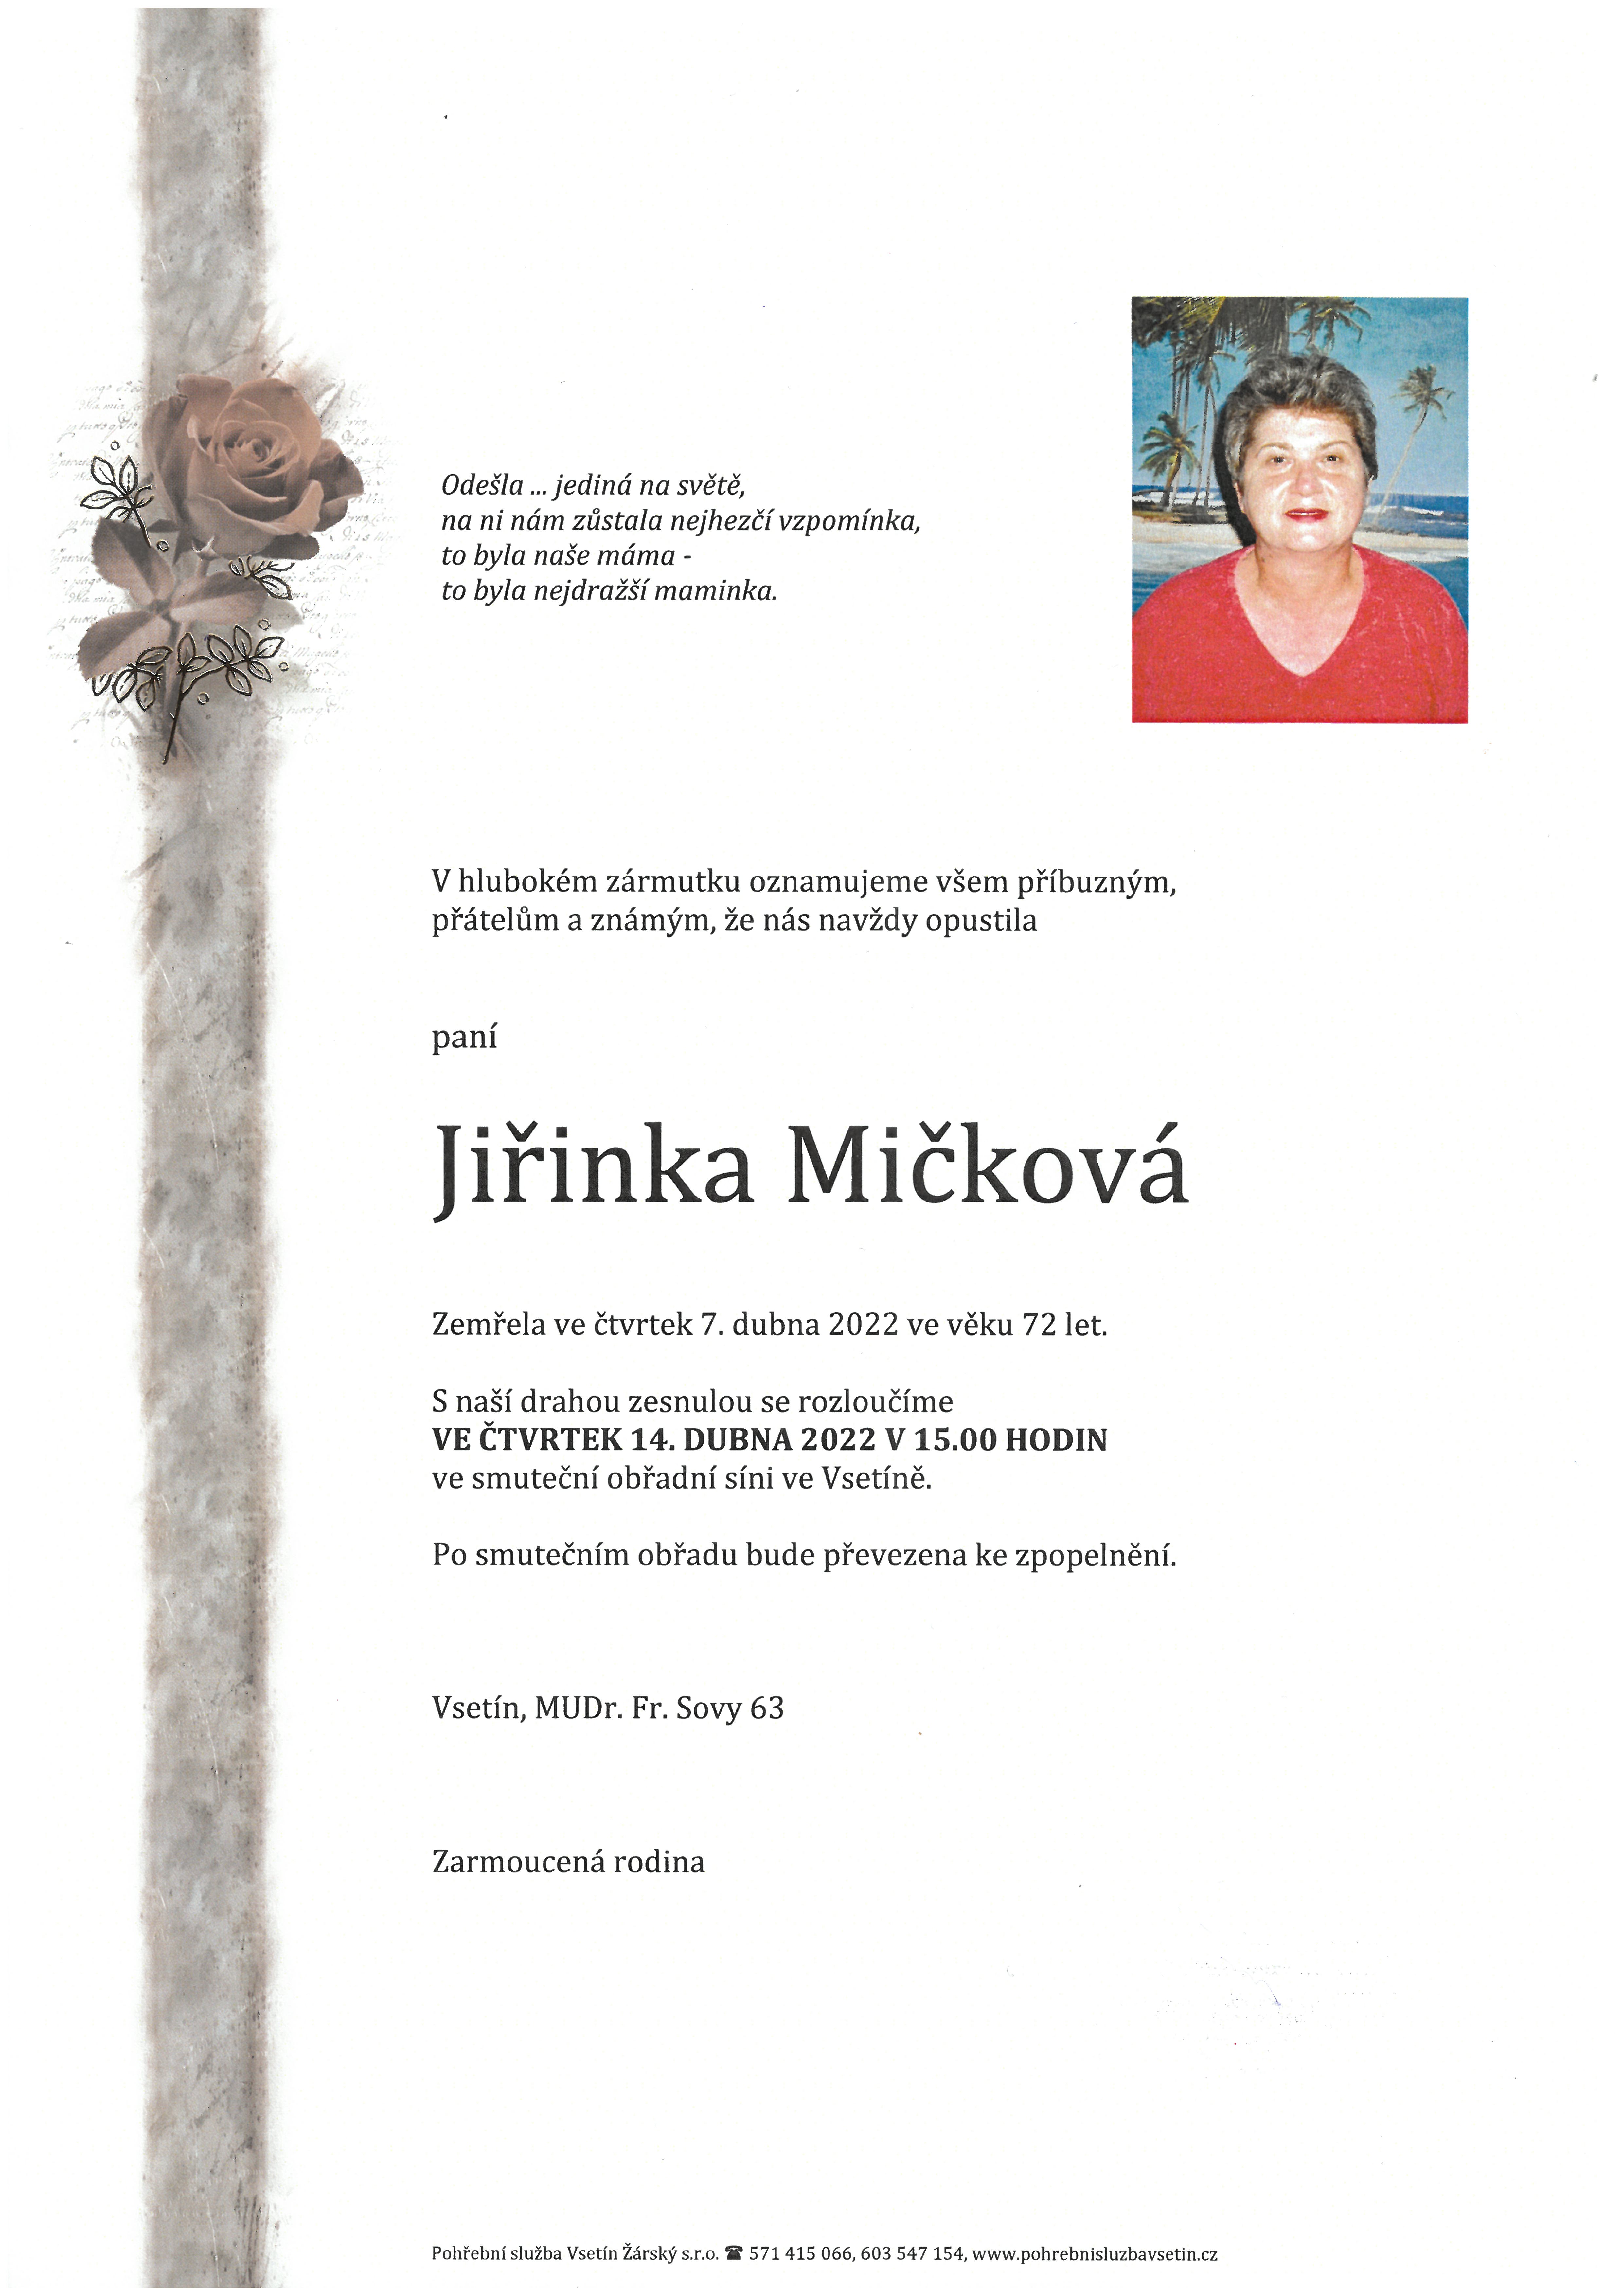 Jiřinka Mičková